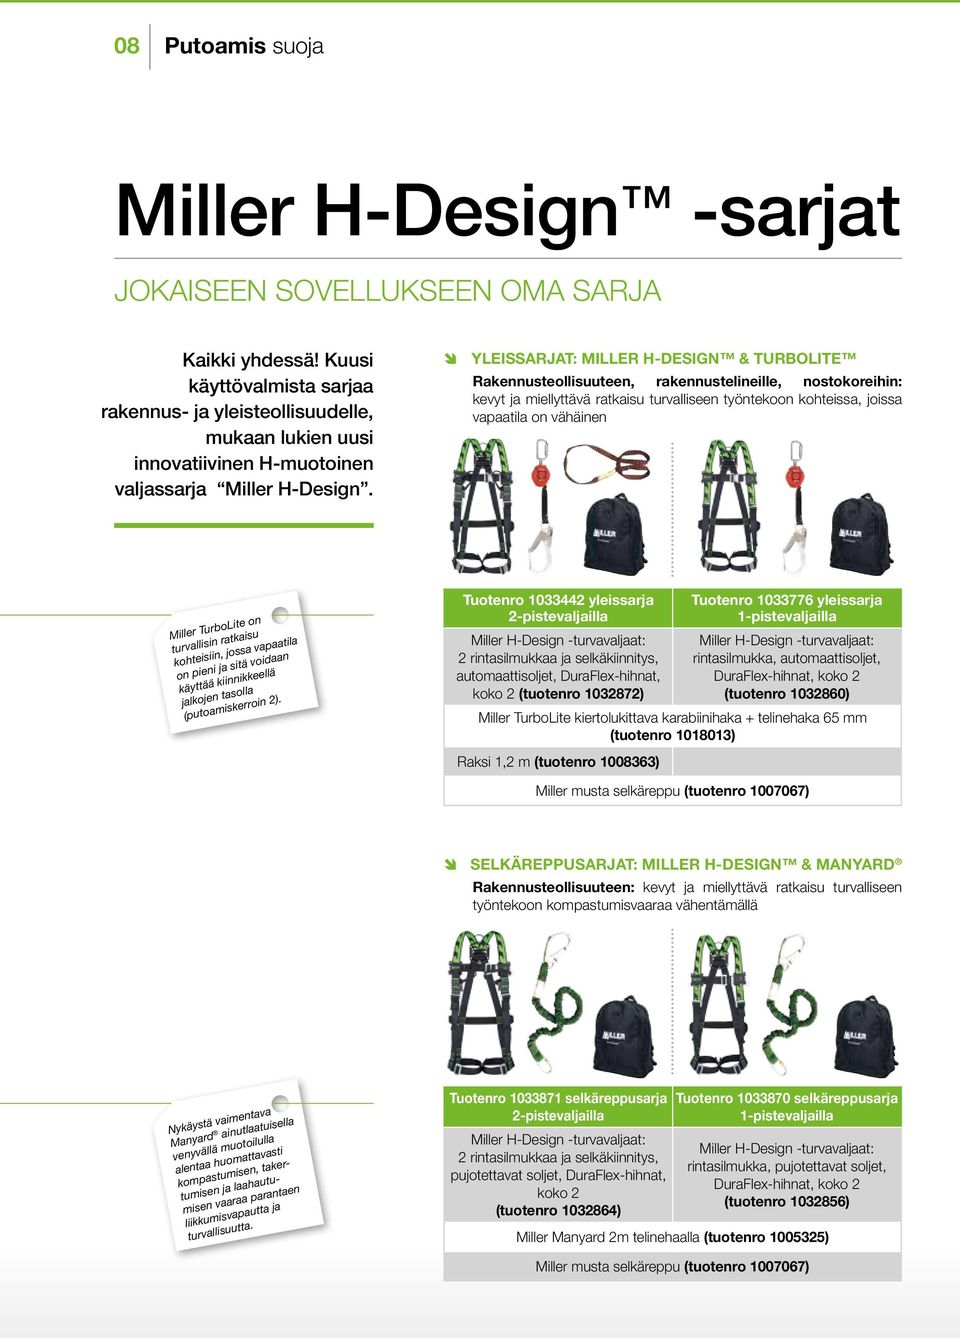 YLEISSARJAT: MILLER H-DESIGN & TURBOLITE Rakennusteollisuuteen, rakennustelineille, nostokoreihin: kevyt ja miellyttävä ratkaisu turvalliseen työntekoon kohteissa, joissa vapaatila on vähäinen Miller